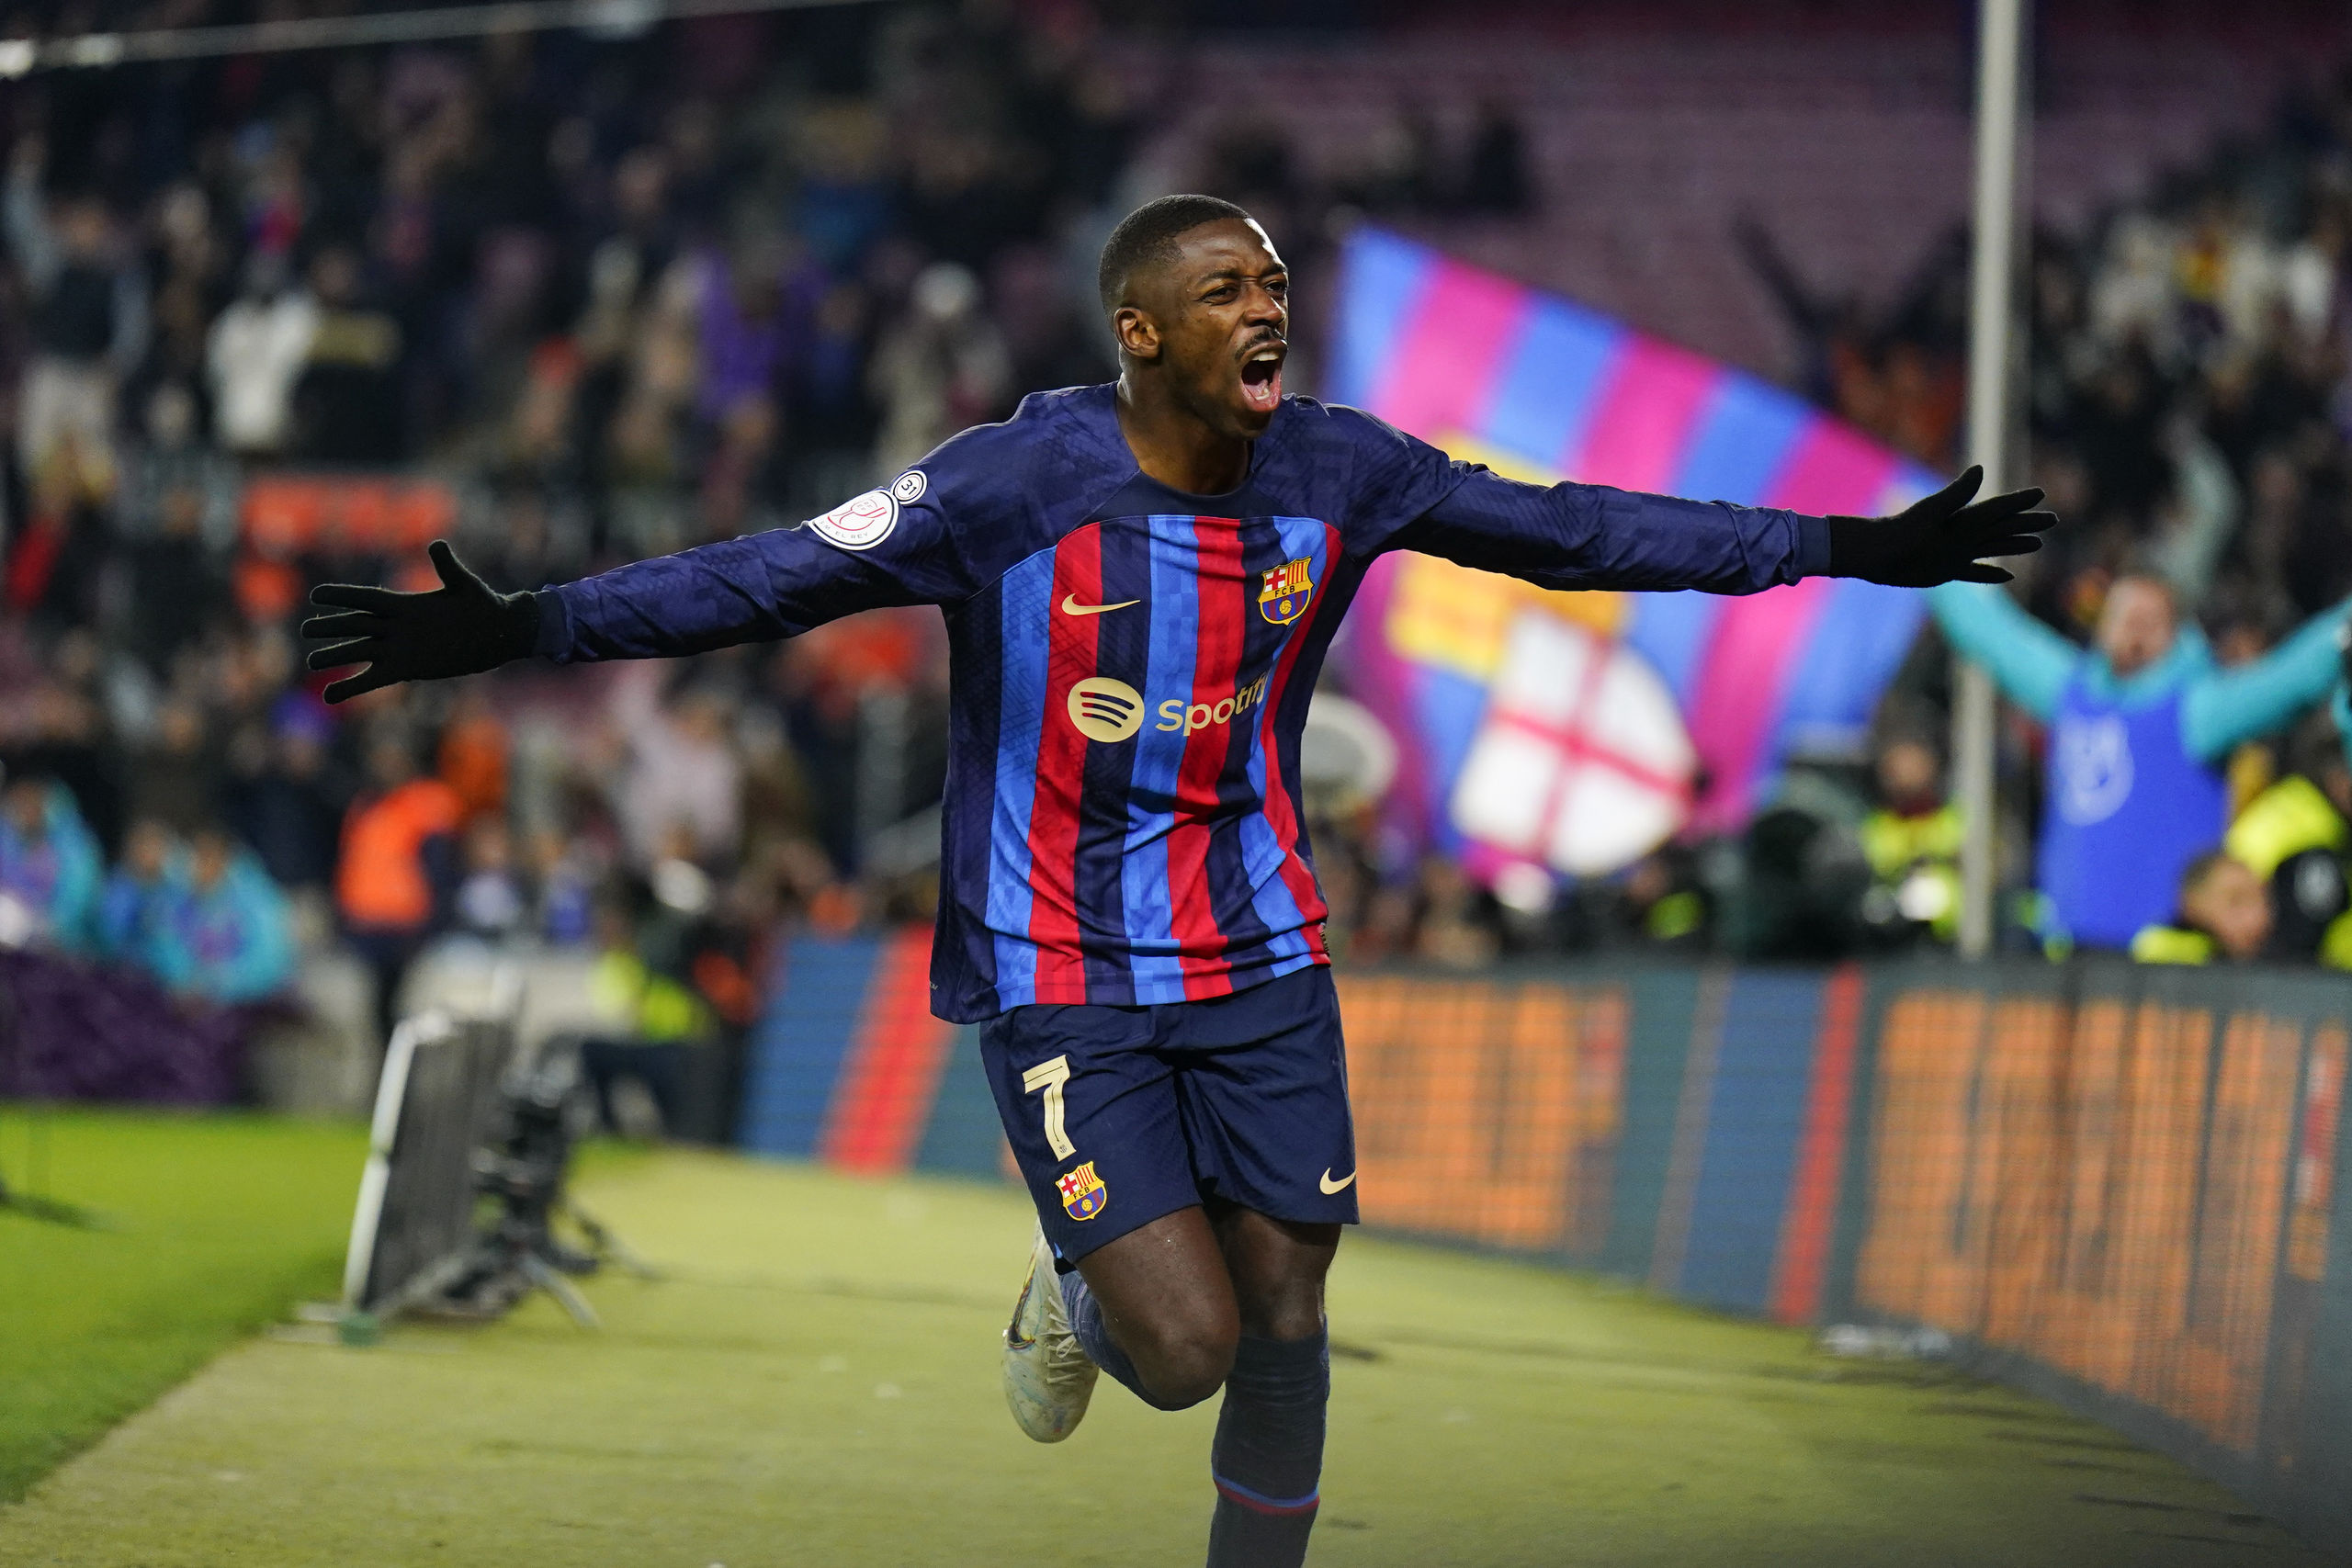 La renovación de Dembélé en el Barça: una obligación deportiva y un marrón económico